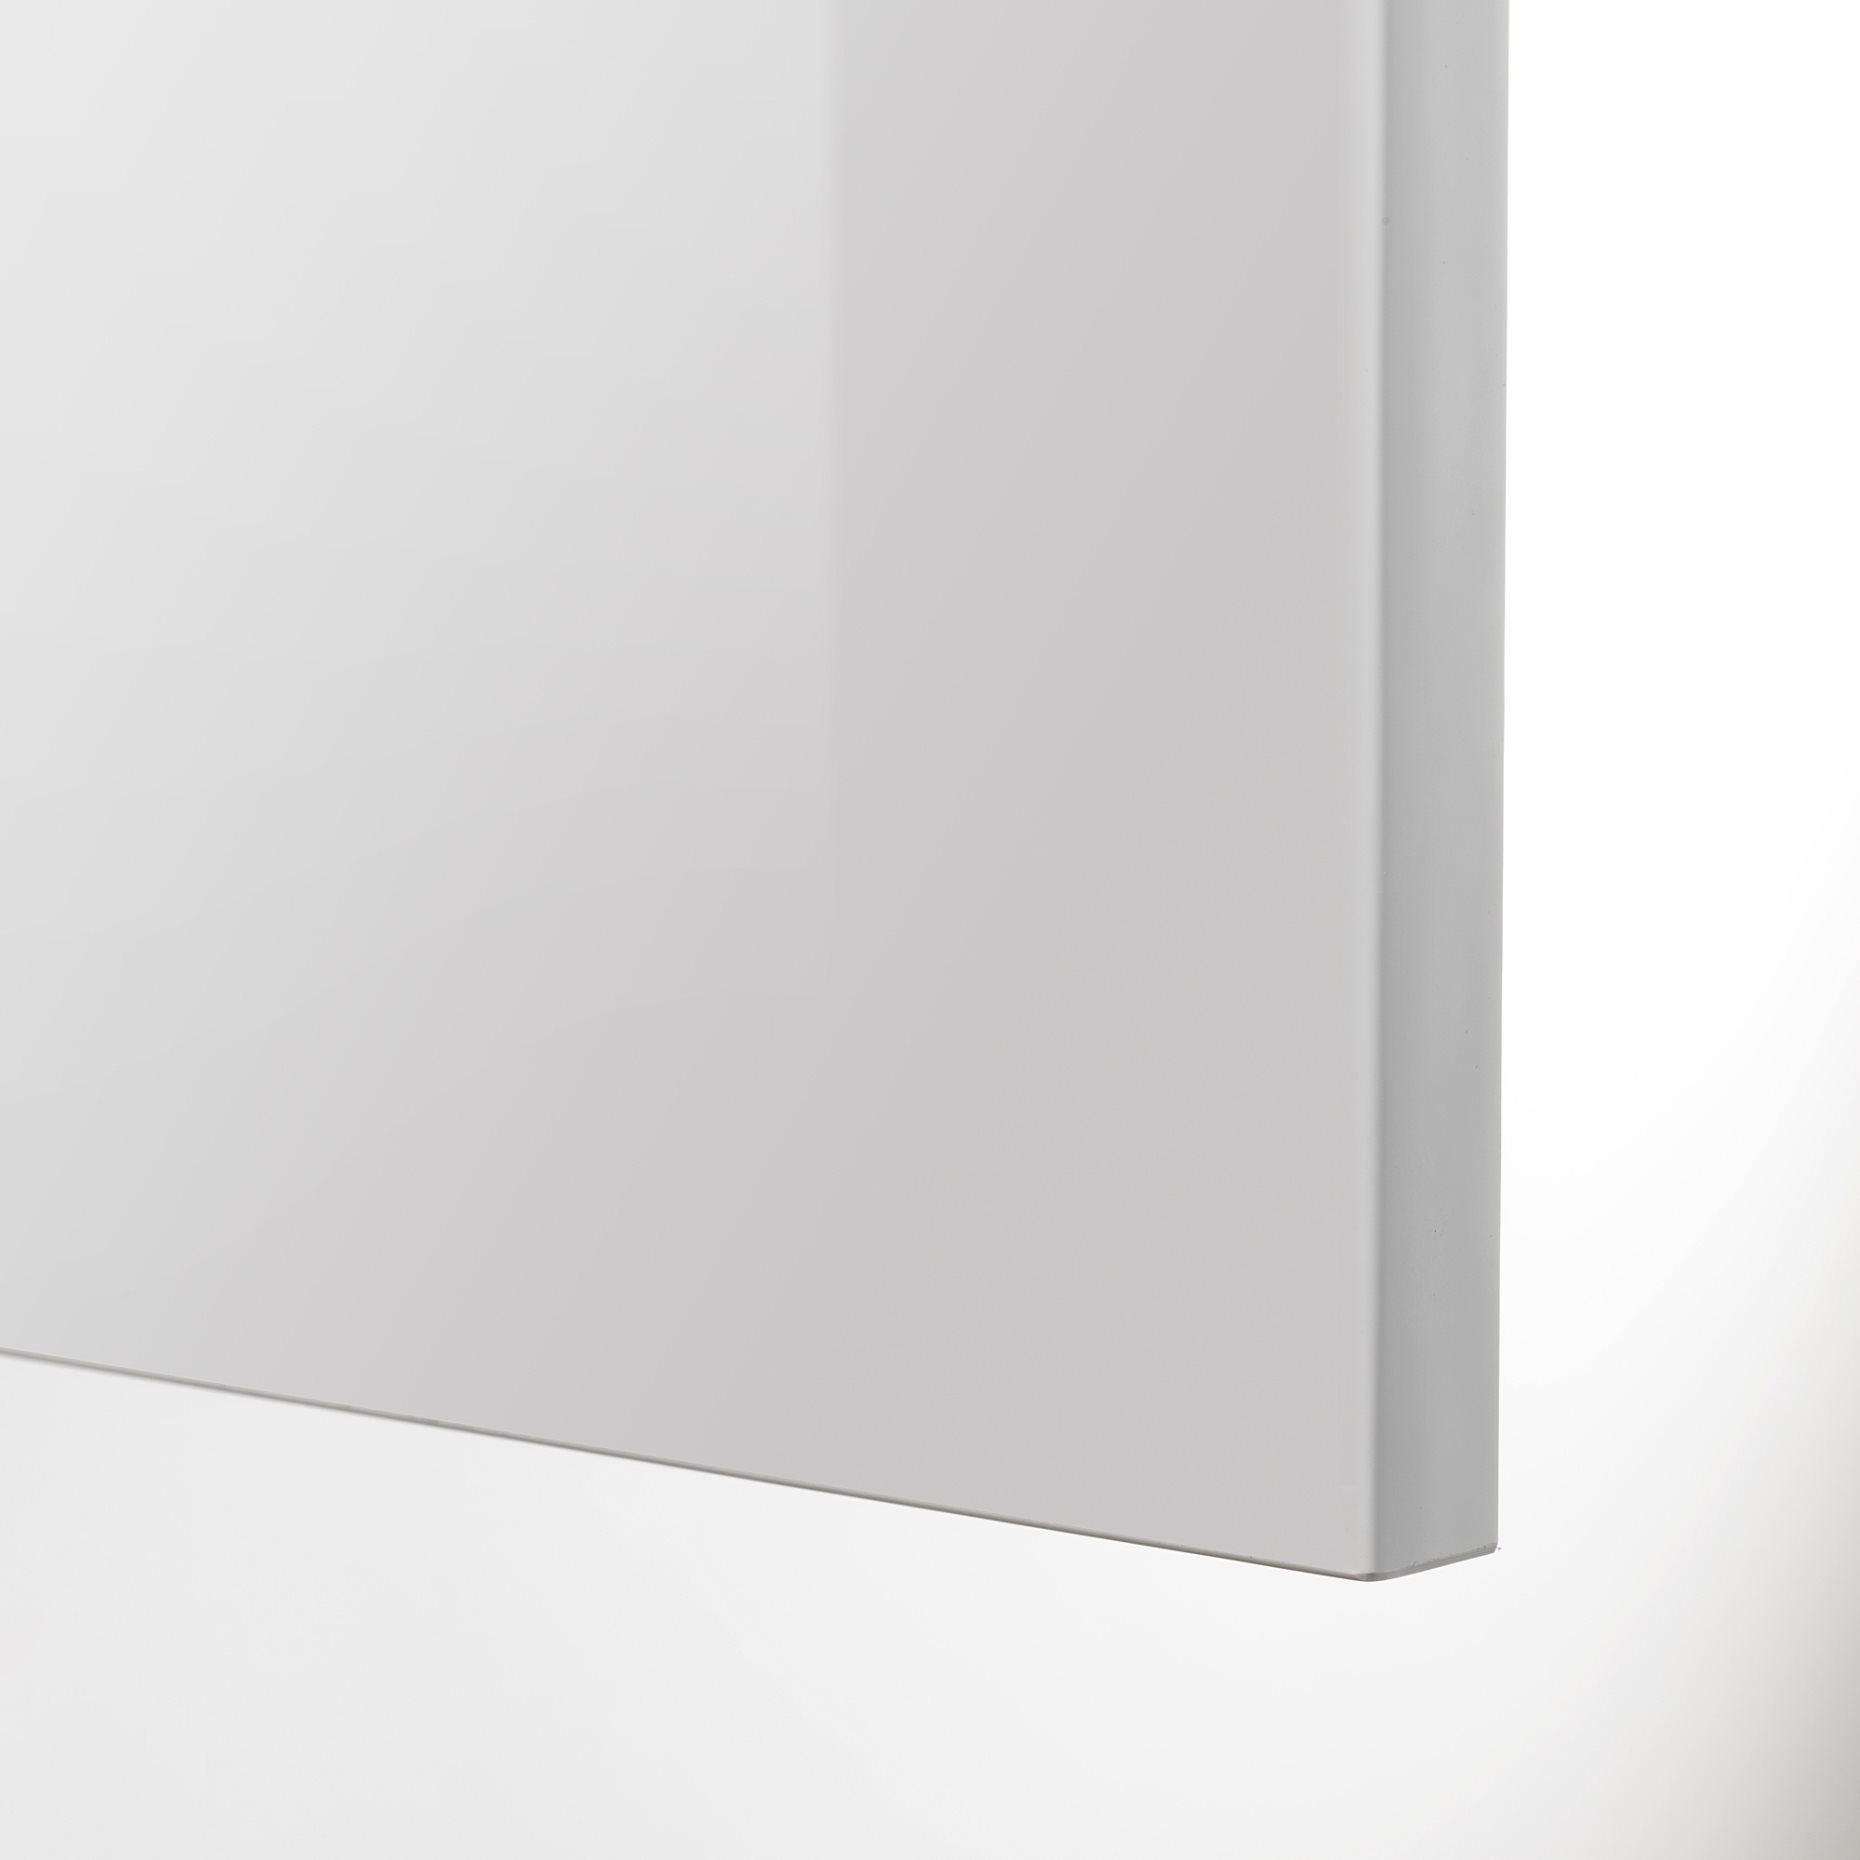 METOD, γωνιακό ντουλάπι βάσης με συρόμενο εξάρτημα, 128x68 cm, 694.635.02